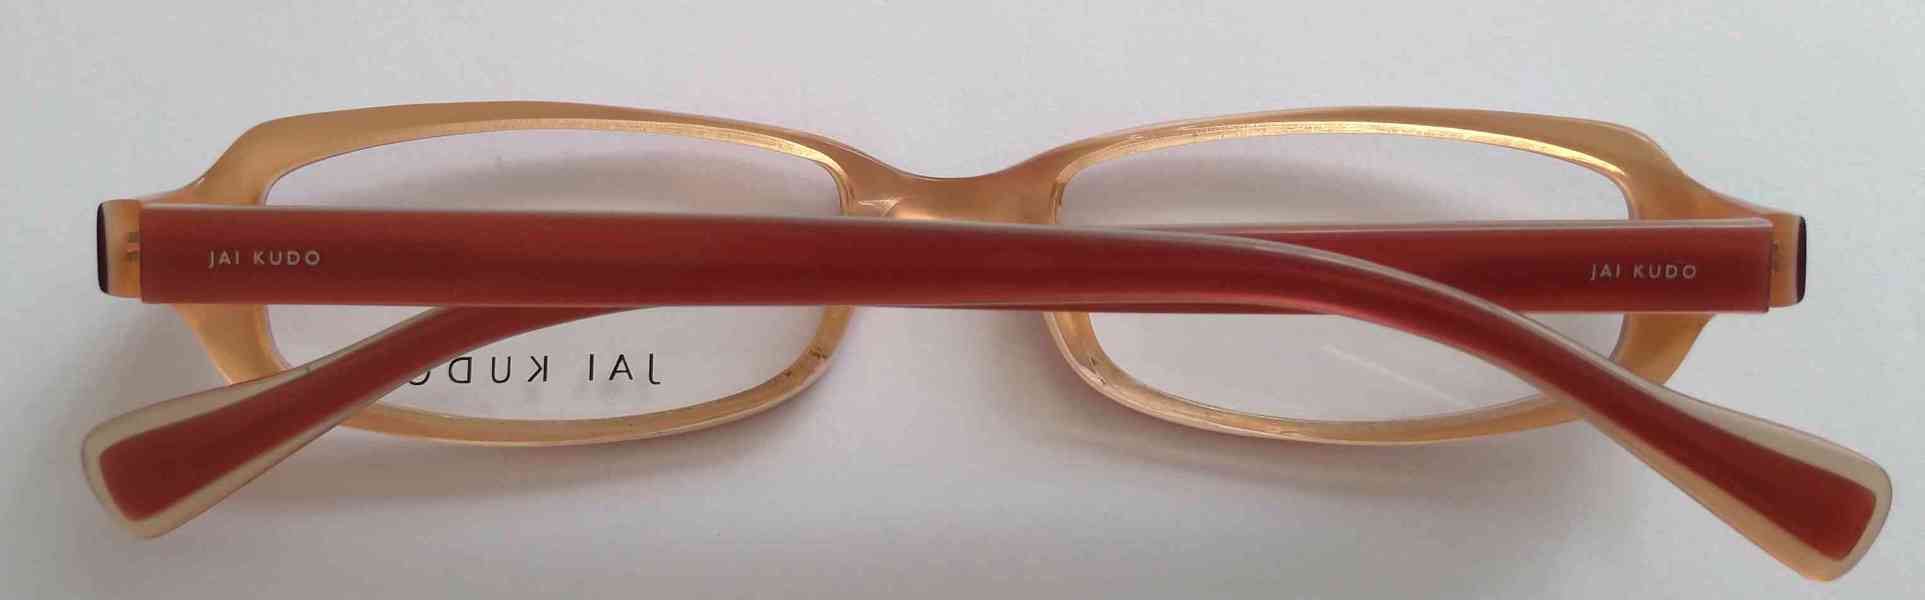 JAI KUDO 1717 P09 dámské brýlové obruby 50-18-135 MOC:2600Kč - foto 10